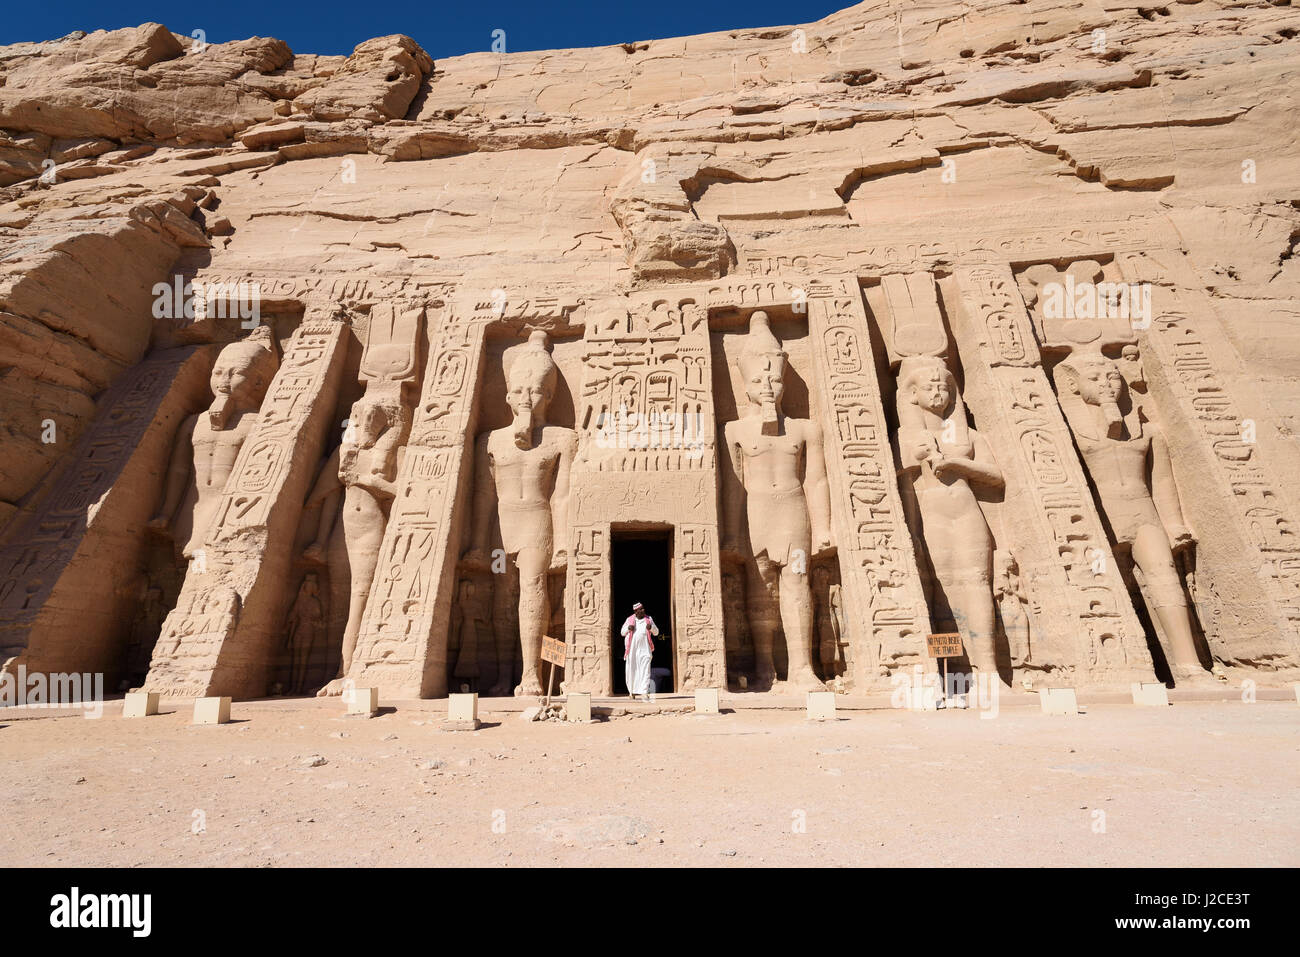 L'Égypte, Assouan, Abou Simbel, Le temple est situé sur la frontière du Soudan dans l'extrême sud de l'Égypte. Construit par Ramsès II. L'Héritage Culturel Mondial de l'UNESCO Banque D'Images